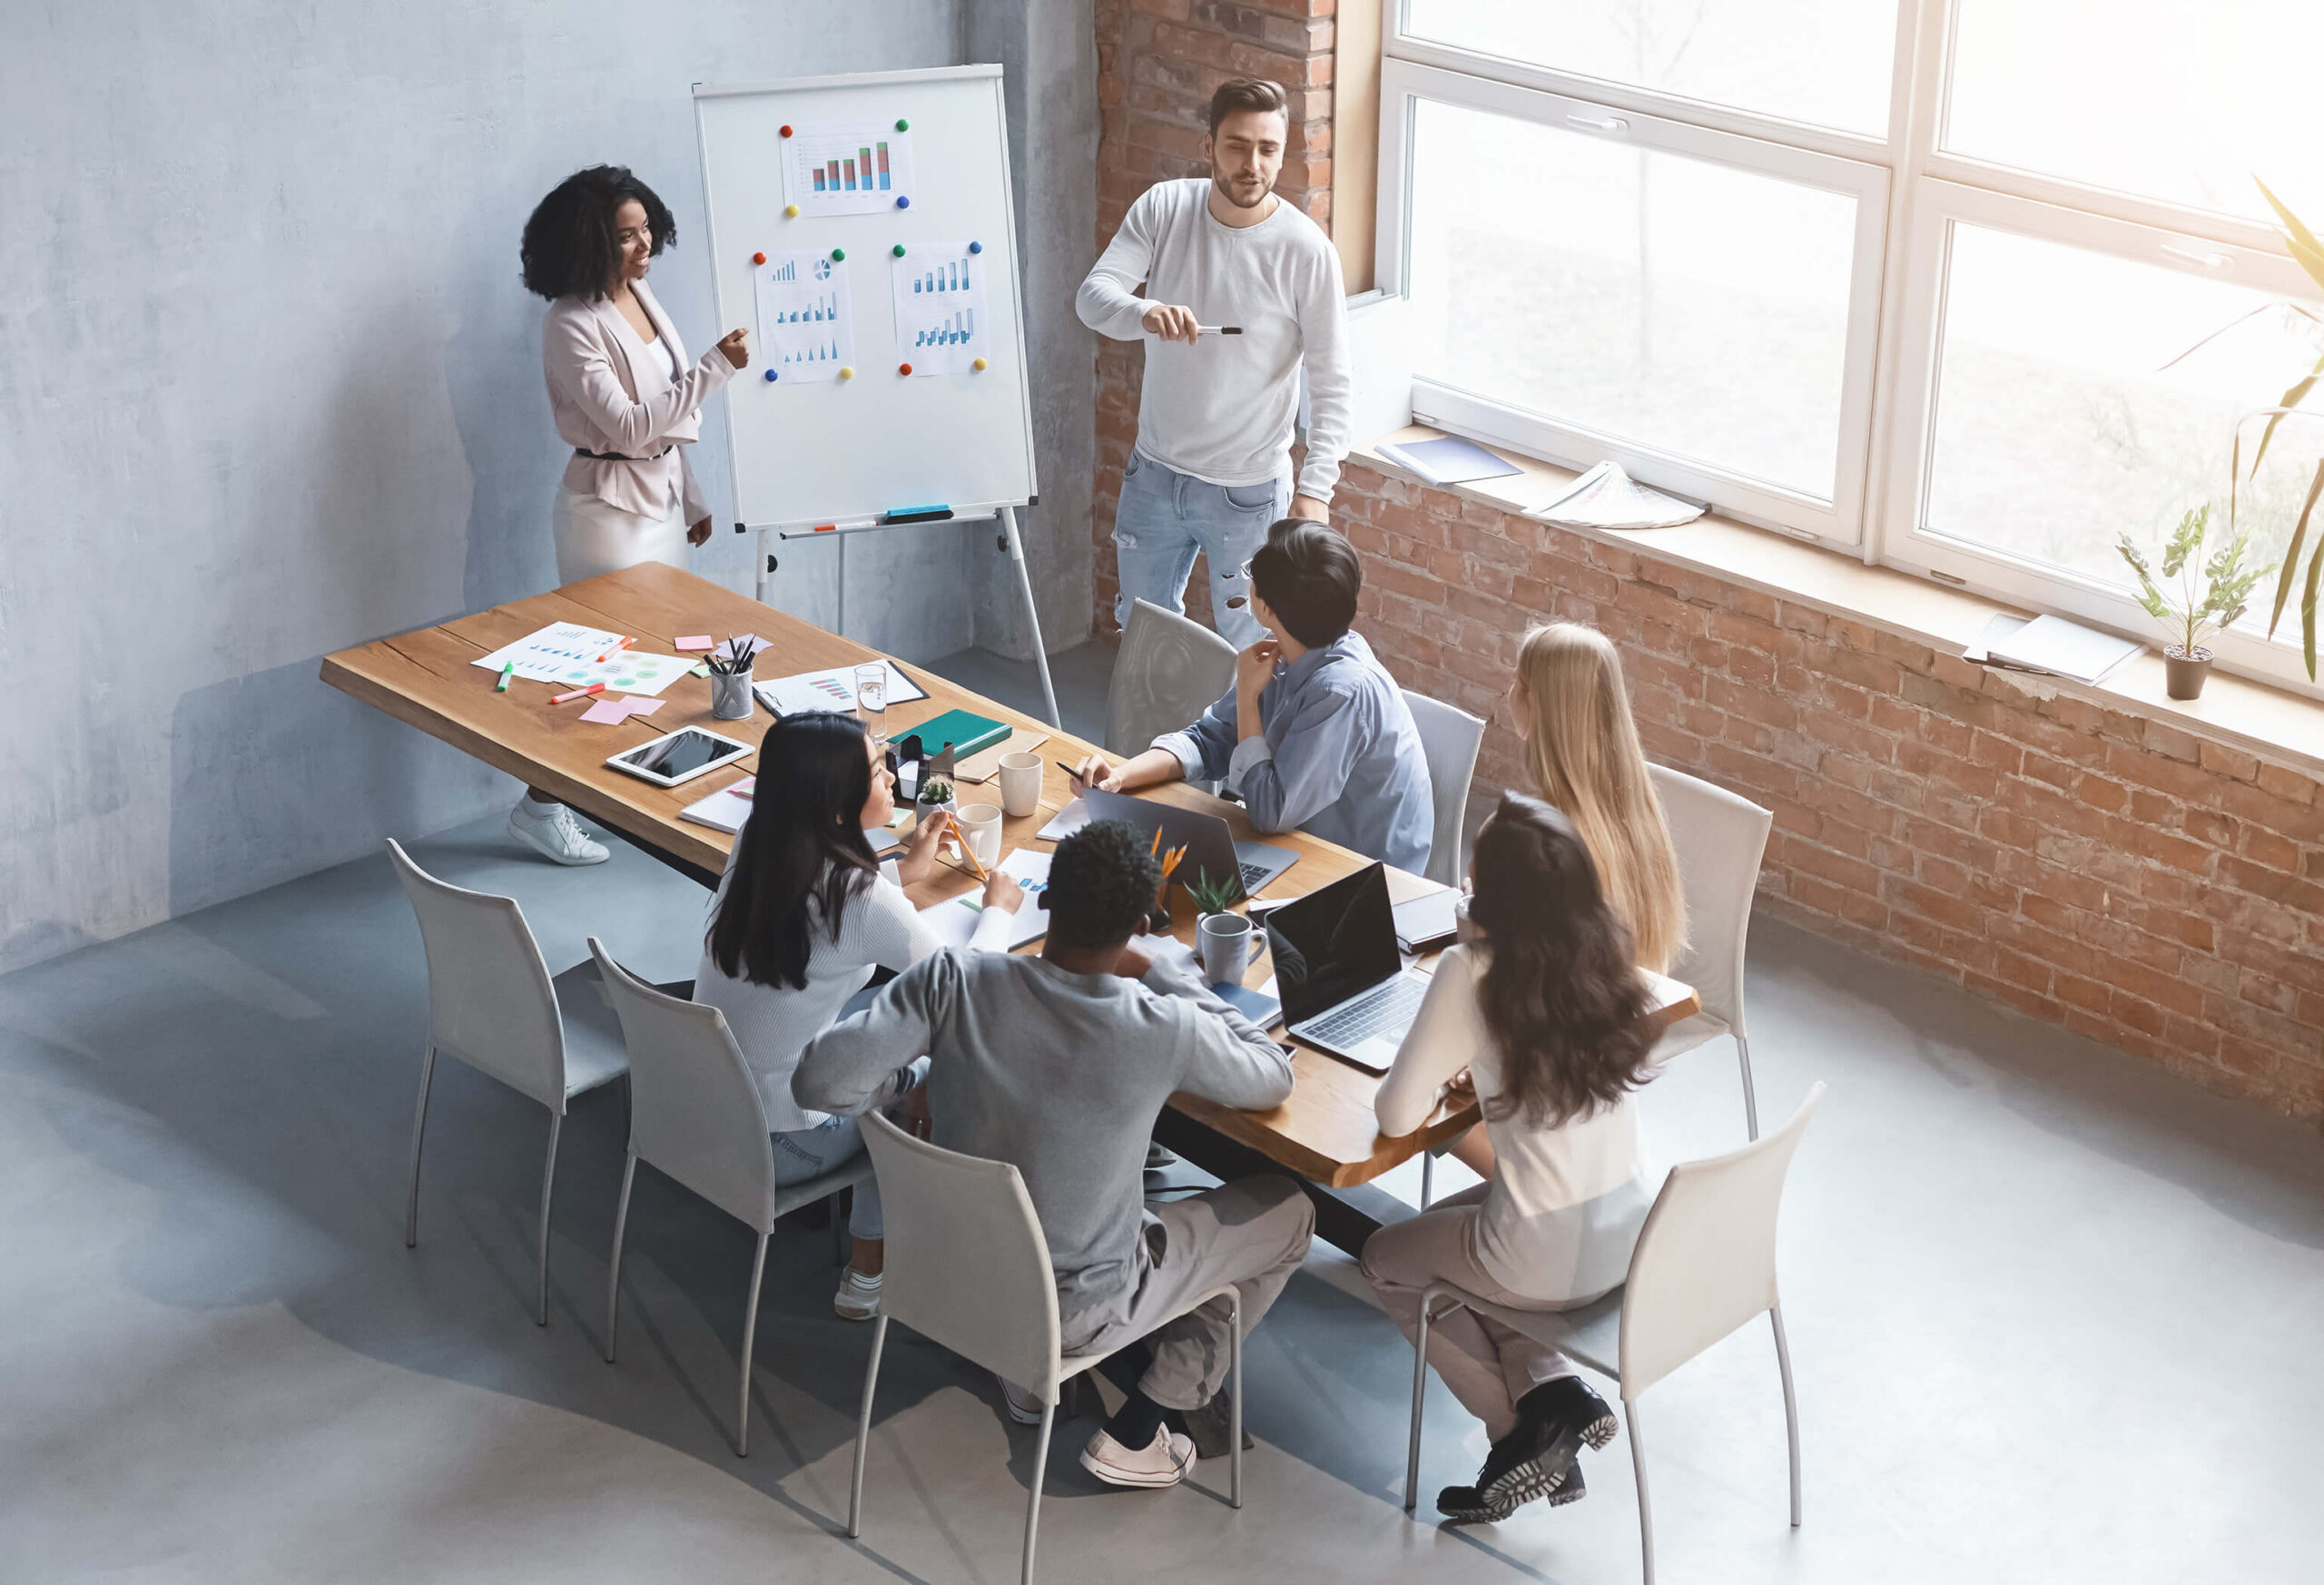 Equipe de marketing discute estratégias em uma reunião, com dois apresentadores explicando gráficos em um quadro branco